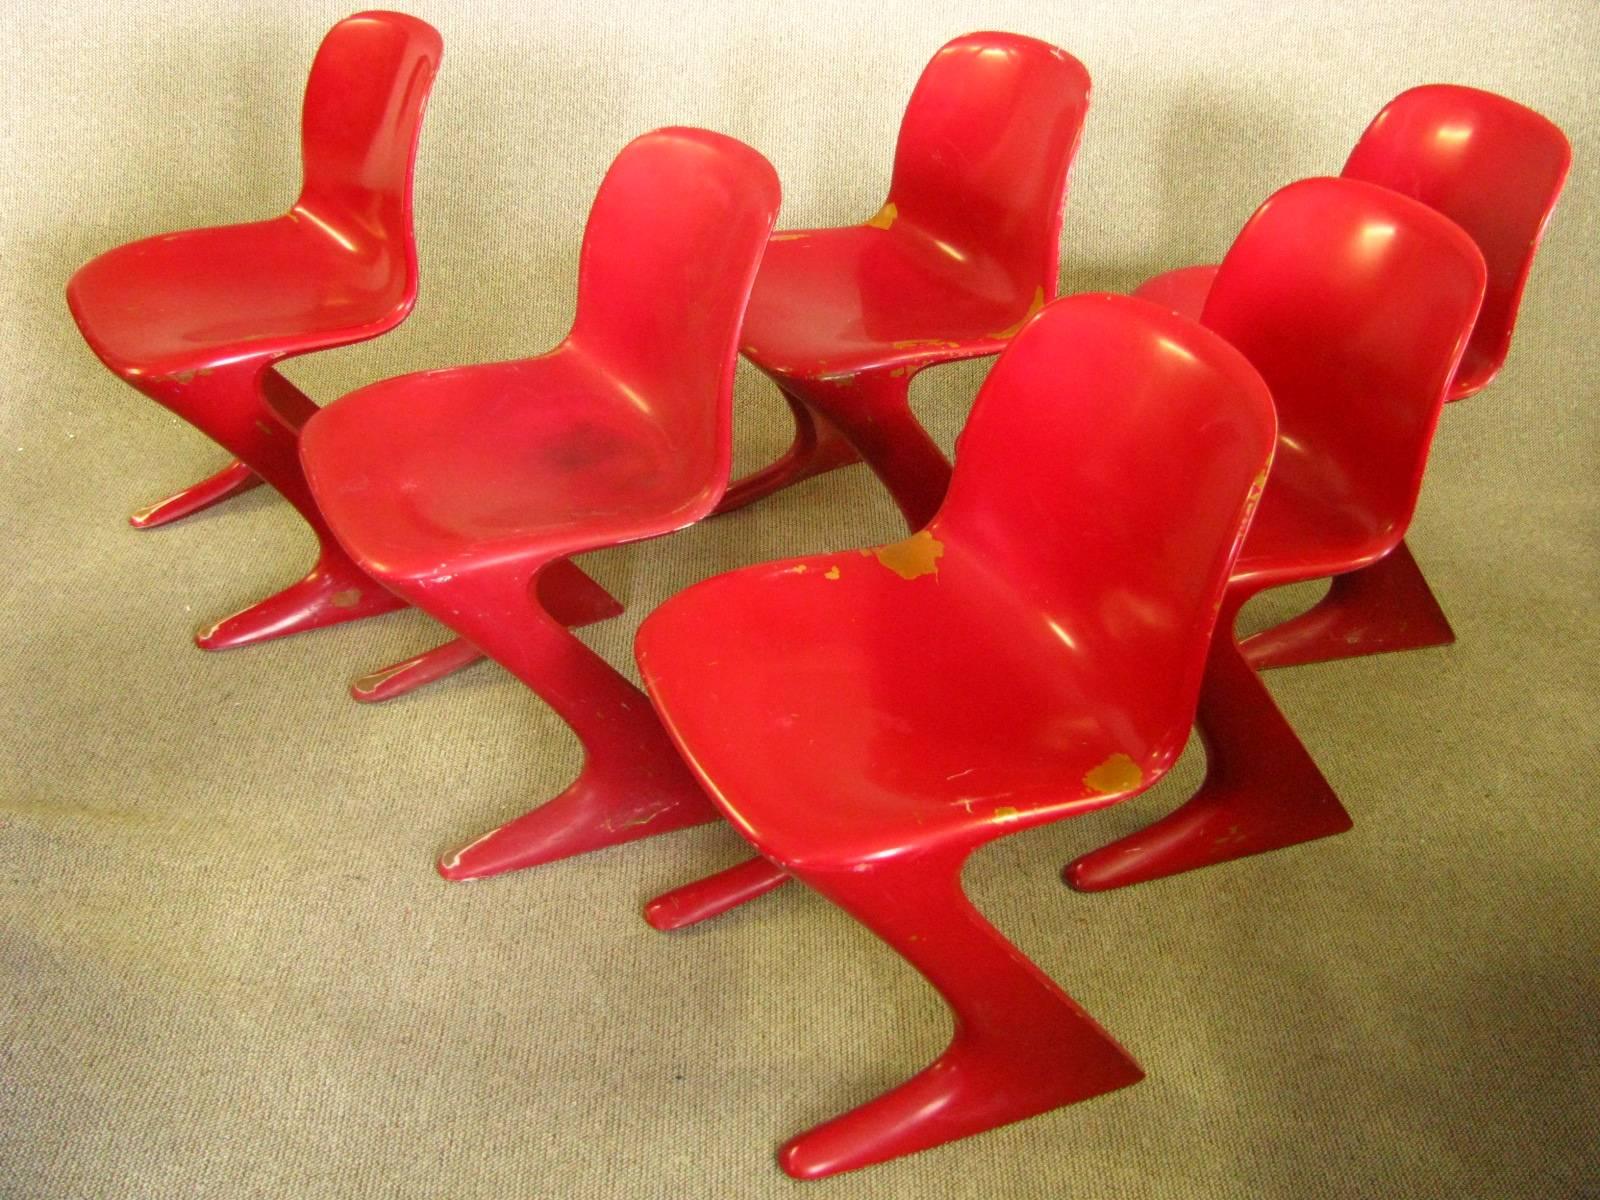 Ensemble de six chaises de salle à manger allemandes du milieu du siècle, Ernst Moeckel, 1968

C'est ce qu'on appelle la chaise Z. Conçu en 1968 en RDA par Ernst Moeckl (1931) et Siegfried Mehl, version allemande de la chaise Panton. Également